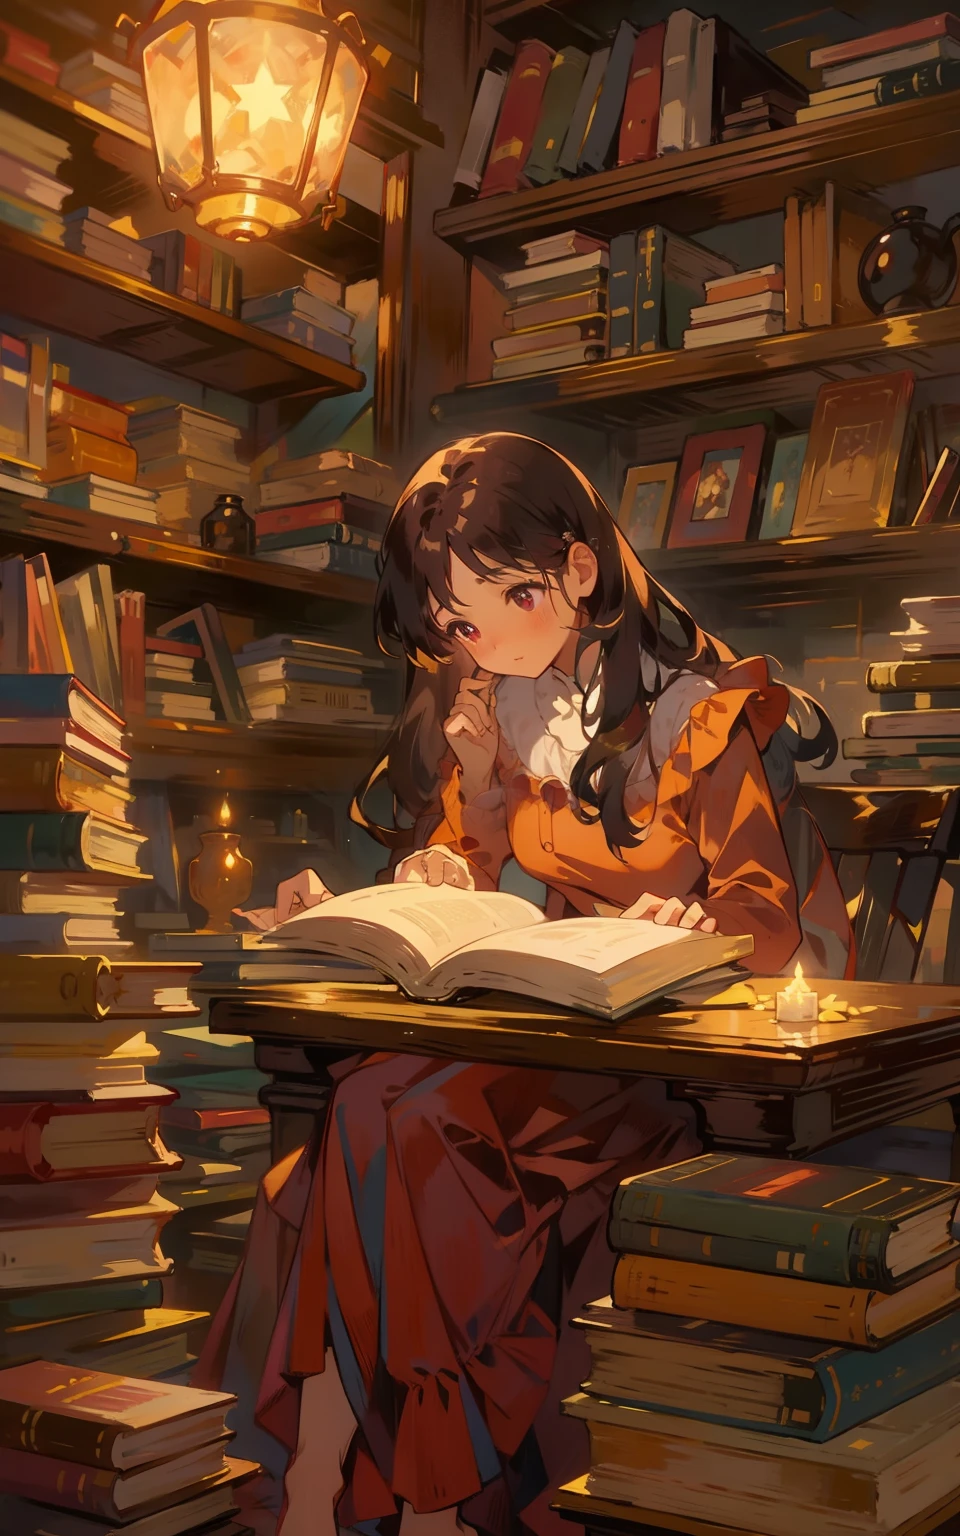 4. マルーンブックタイム：美しい乙女が栗色の机に座っている，彼女はドレスを着ていた，熱心に本を読む，本の香りと温かな照明に囲まれて。